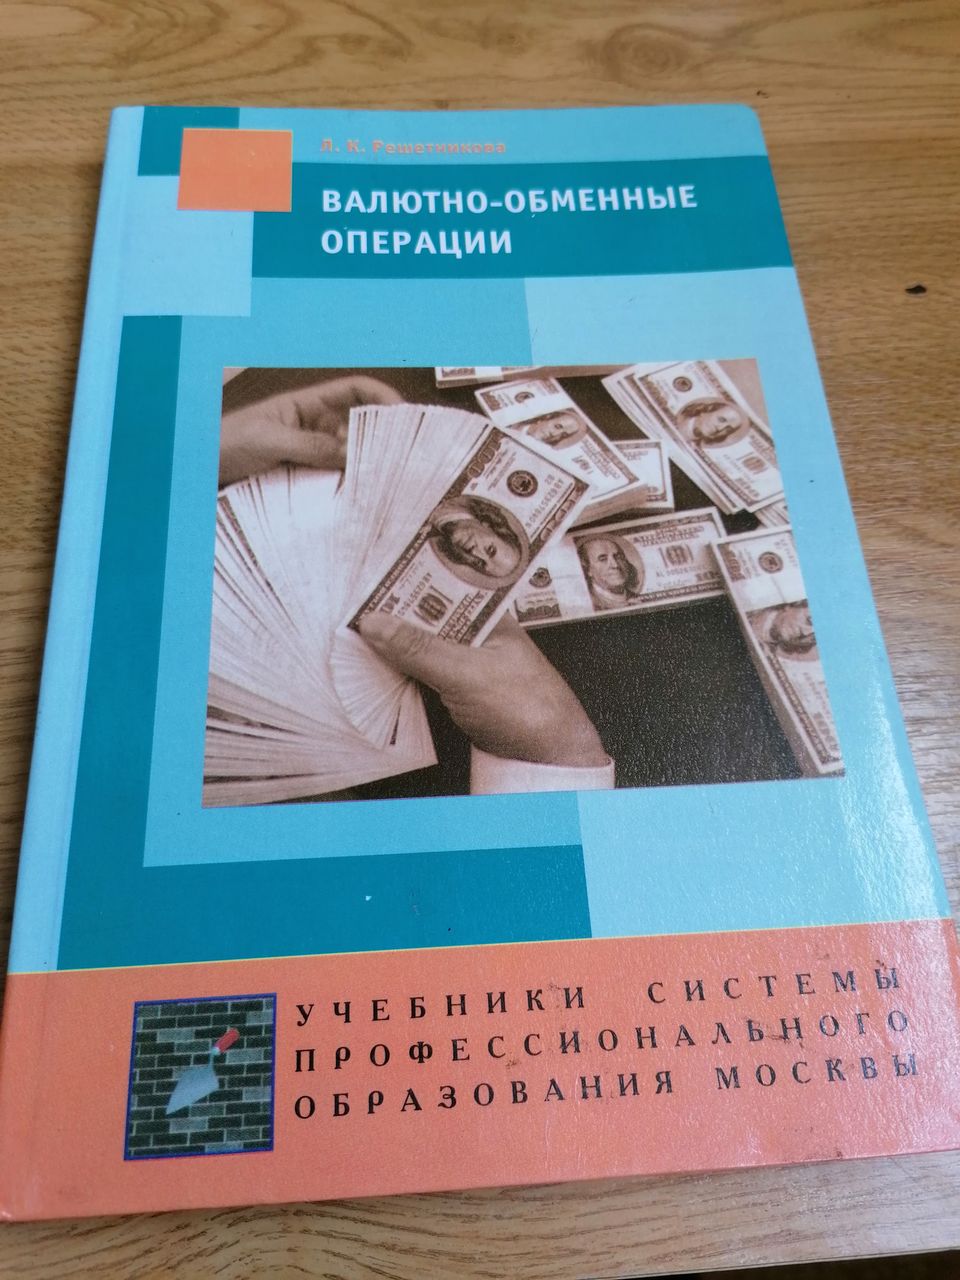 Обмен валюты сегодня иркутск ethereum mining calculator and profit calculator